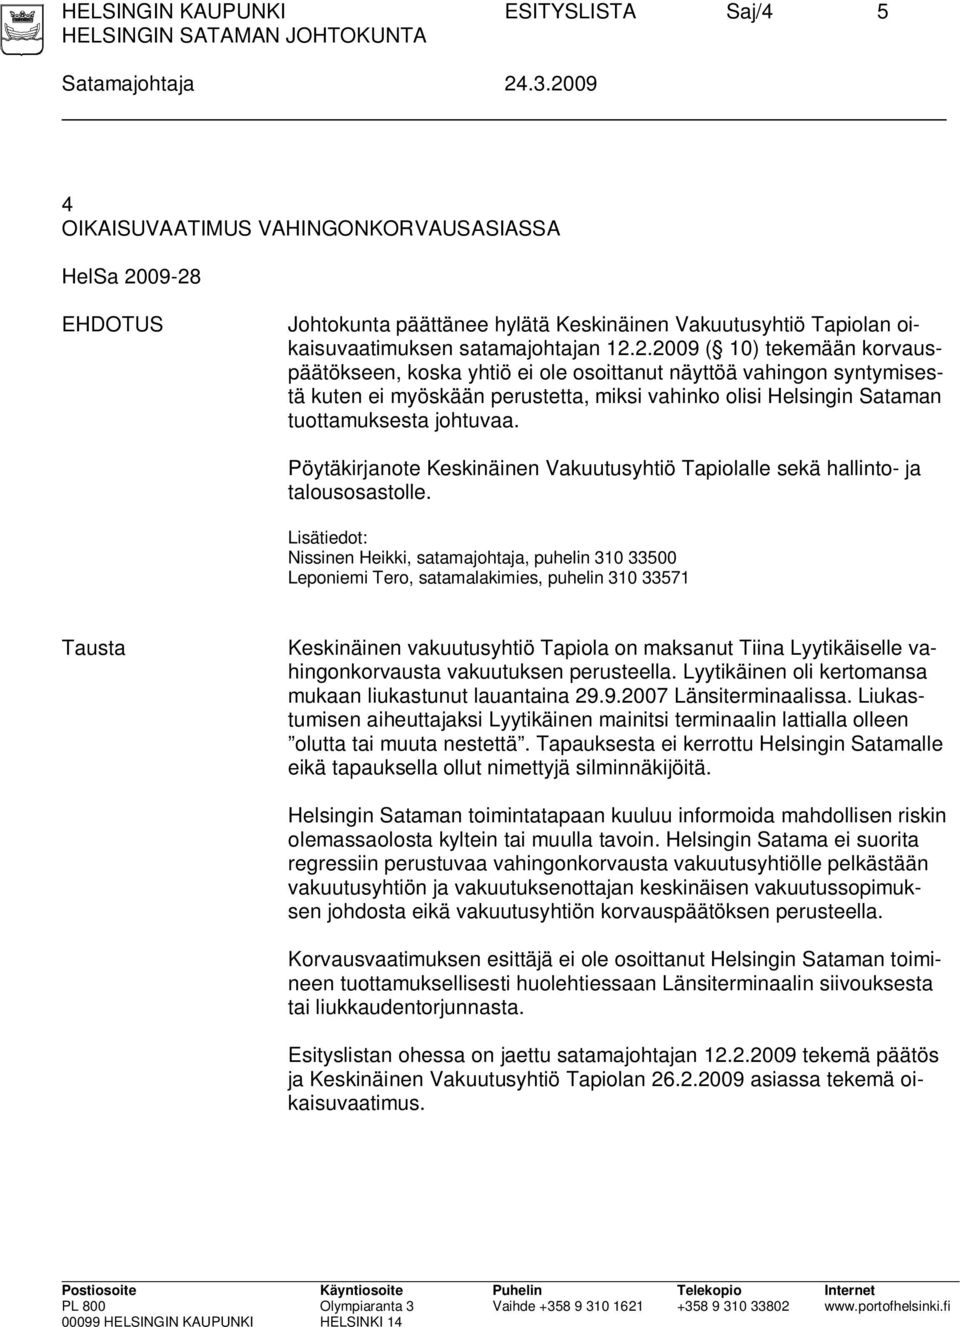 Pöytäkirjanote Keskinäinen Vakuutusyhtiö Tapiolalle sekä hallinto- ja talousosastolle.